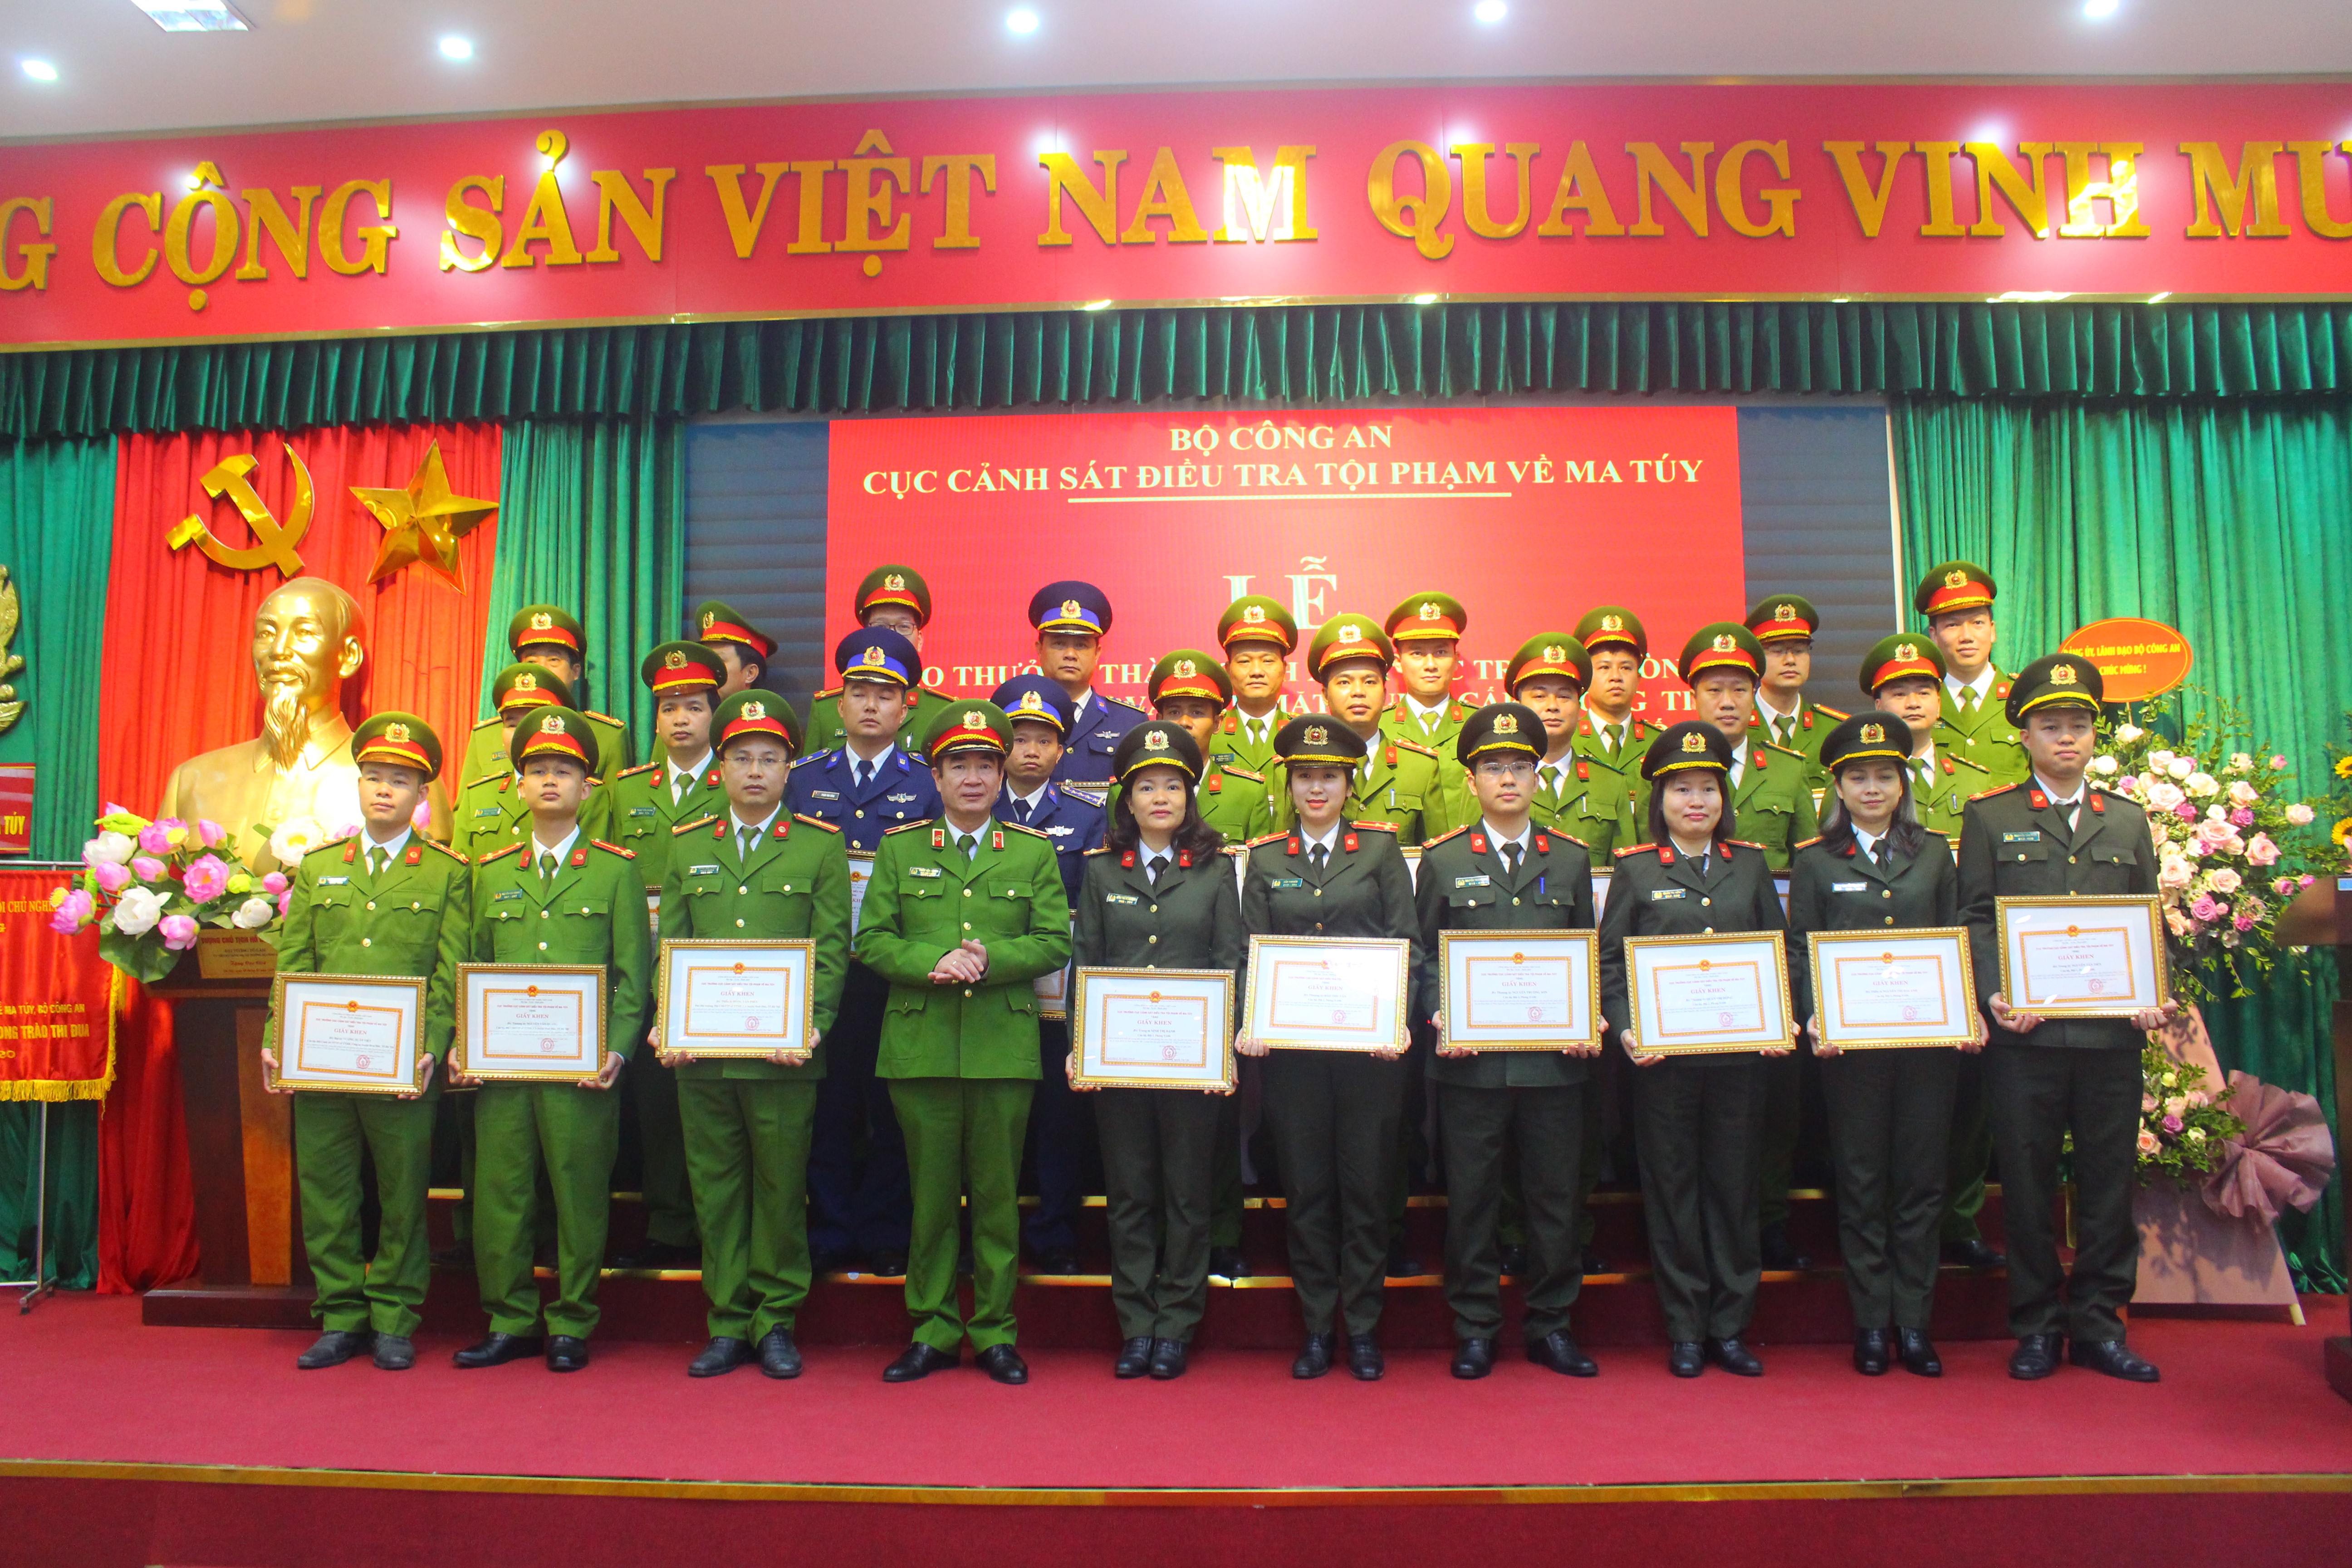 Thiếu tướng Trần Văn Doanh, Phó Cục trưởng Cục Cảnh sát điều tra tội phạm về ma tuý tặng Giấy khen cho các tập thể, cá nhân có thành tích xuất sắc trong phòng, chống ma tuý